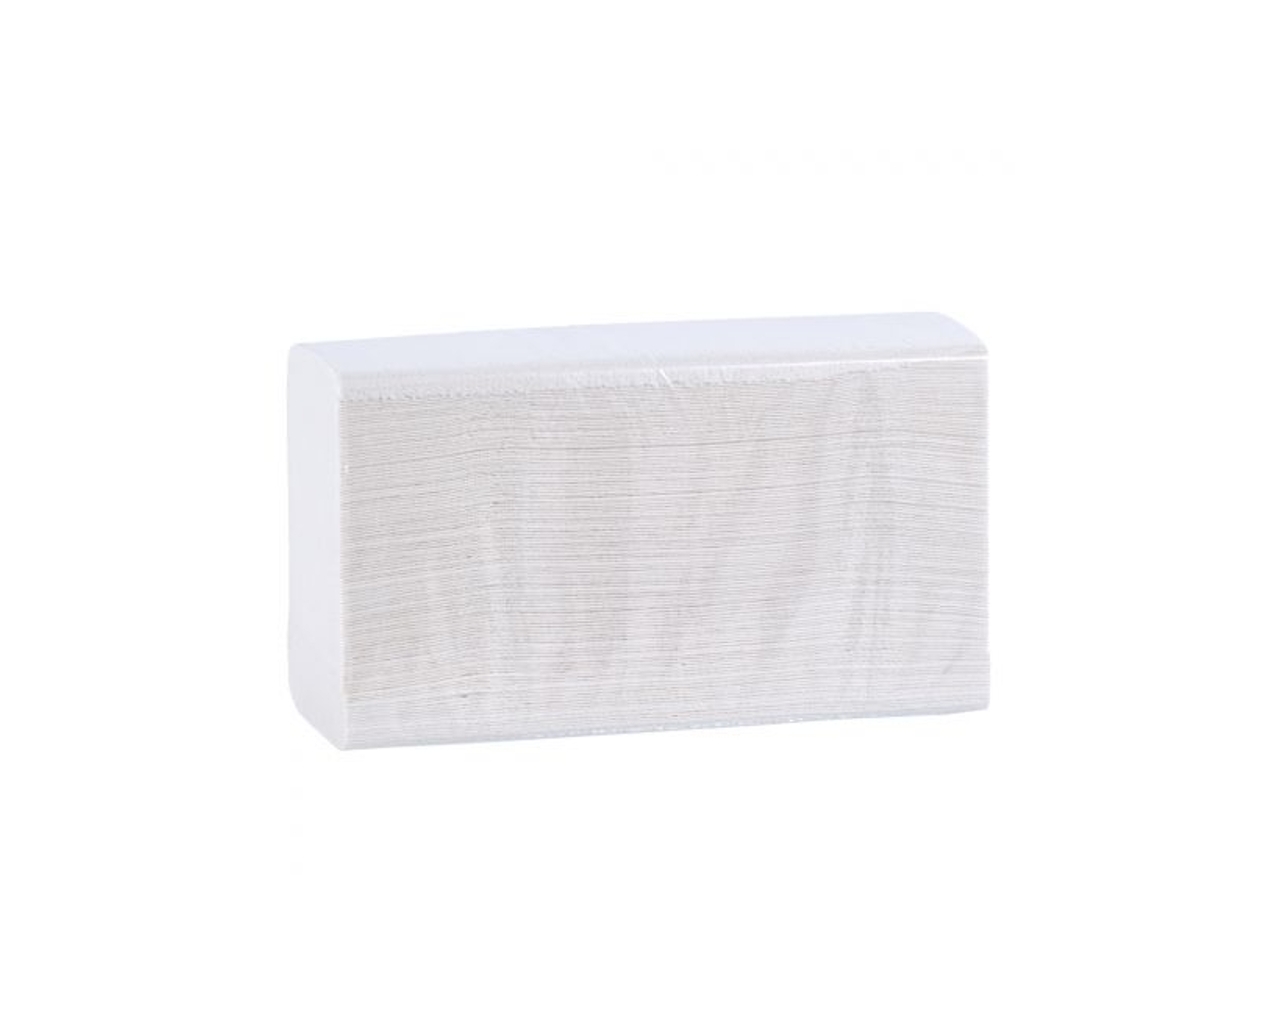 Ręczniki papierowe składane MERIDA TOP SLIM, białe, celulozowe, karton 3000 szt.